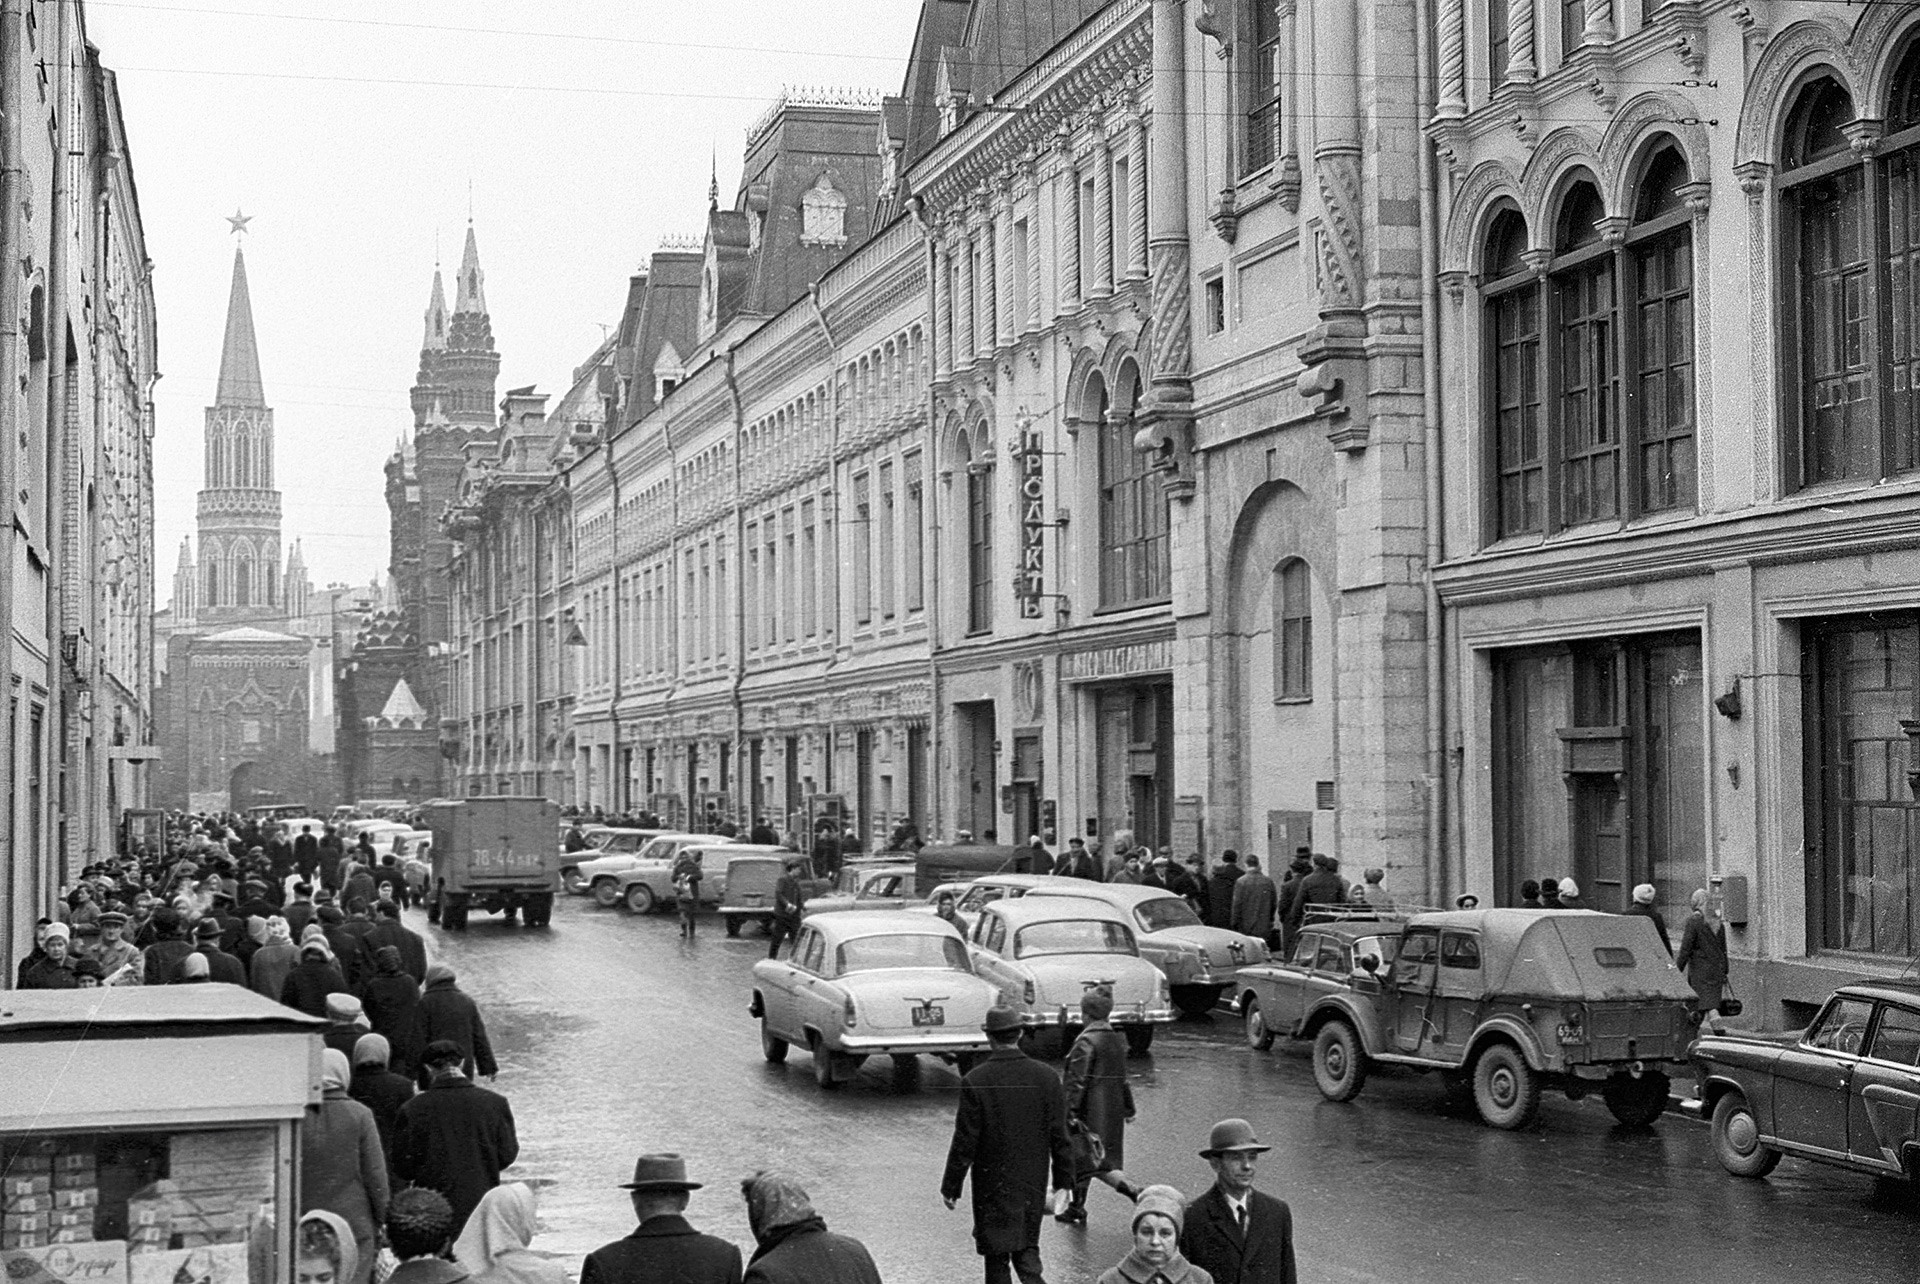 ニコリスカヤ通り、1968年。